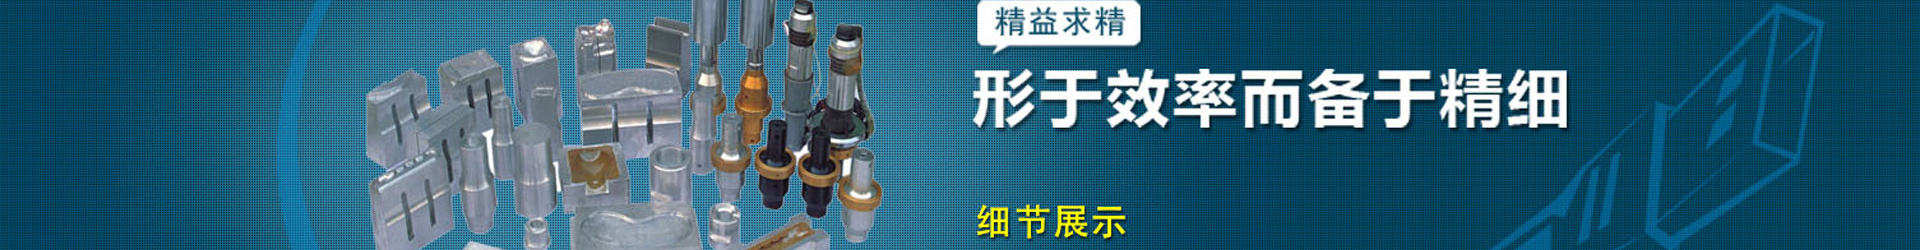 超声波塑料焊接机|超声波焊接机|超声波焊接机价格